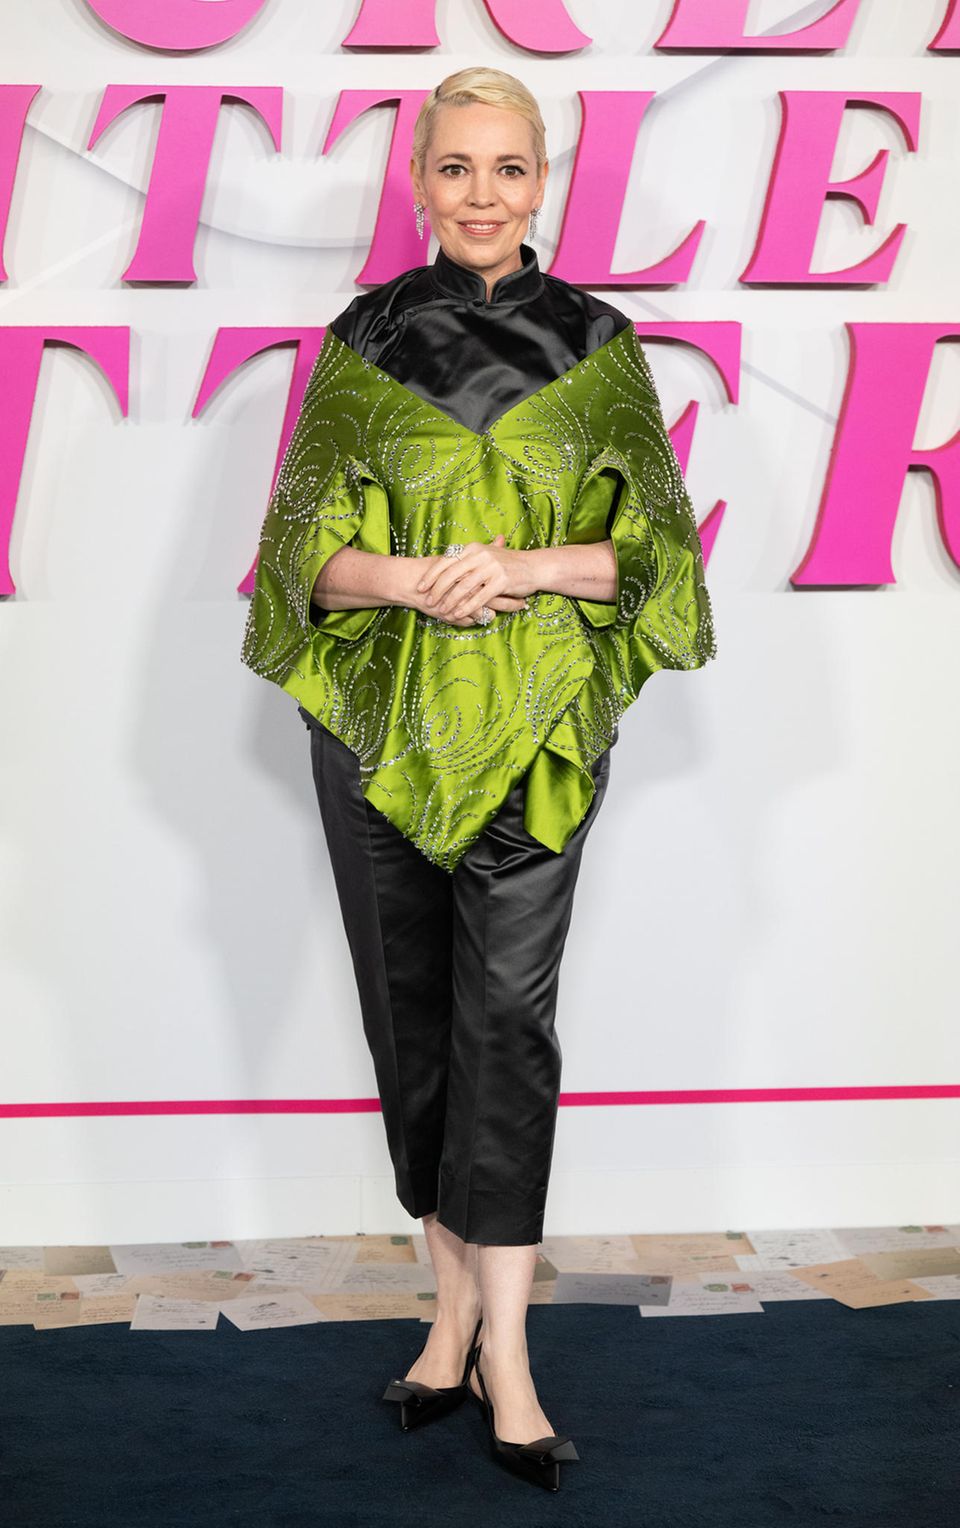 In einem extravaganten Look besucht Olivia Colman die "Wicked Little Letters"-Premiere in London. Ihr ponchoartiges Oberteil glänzt in einem Kontrast aus Grün und Schwarz mit einigen Glitzerdetails. Dazu kombiniert sie eine Chinohose aus Satin und Pumps.